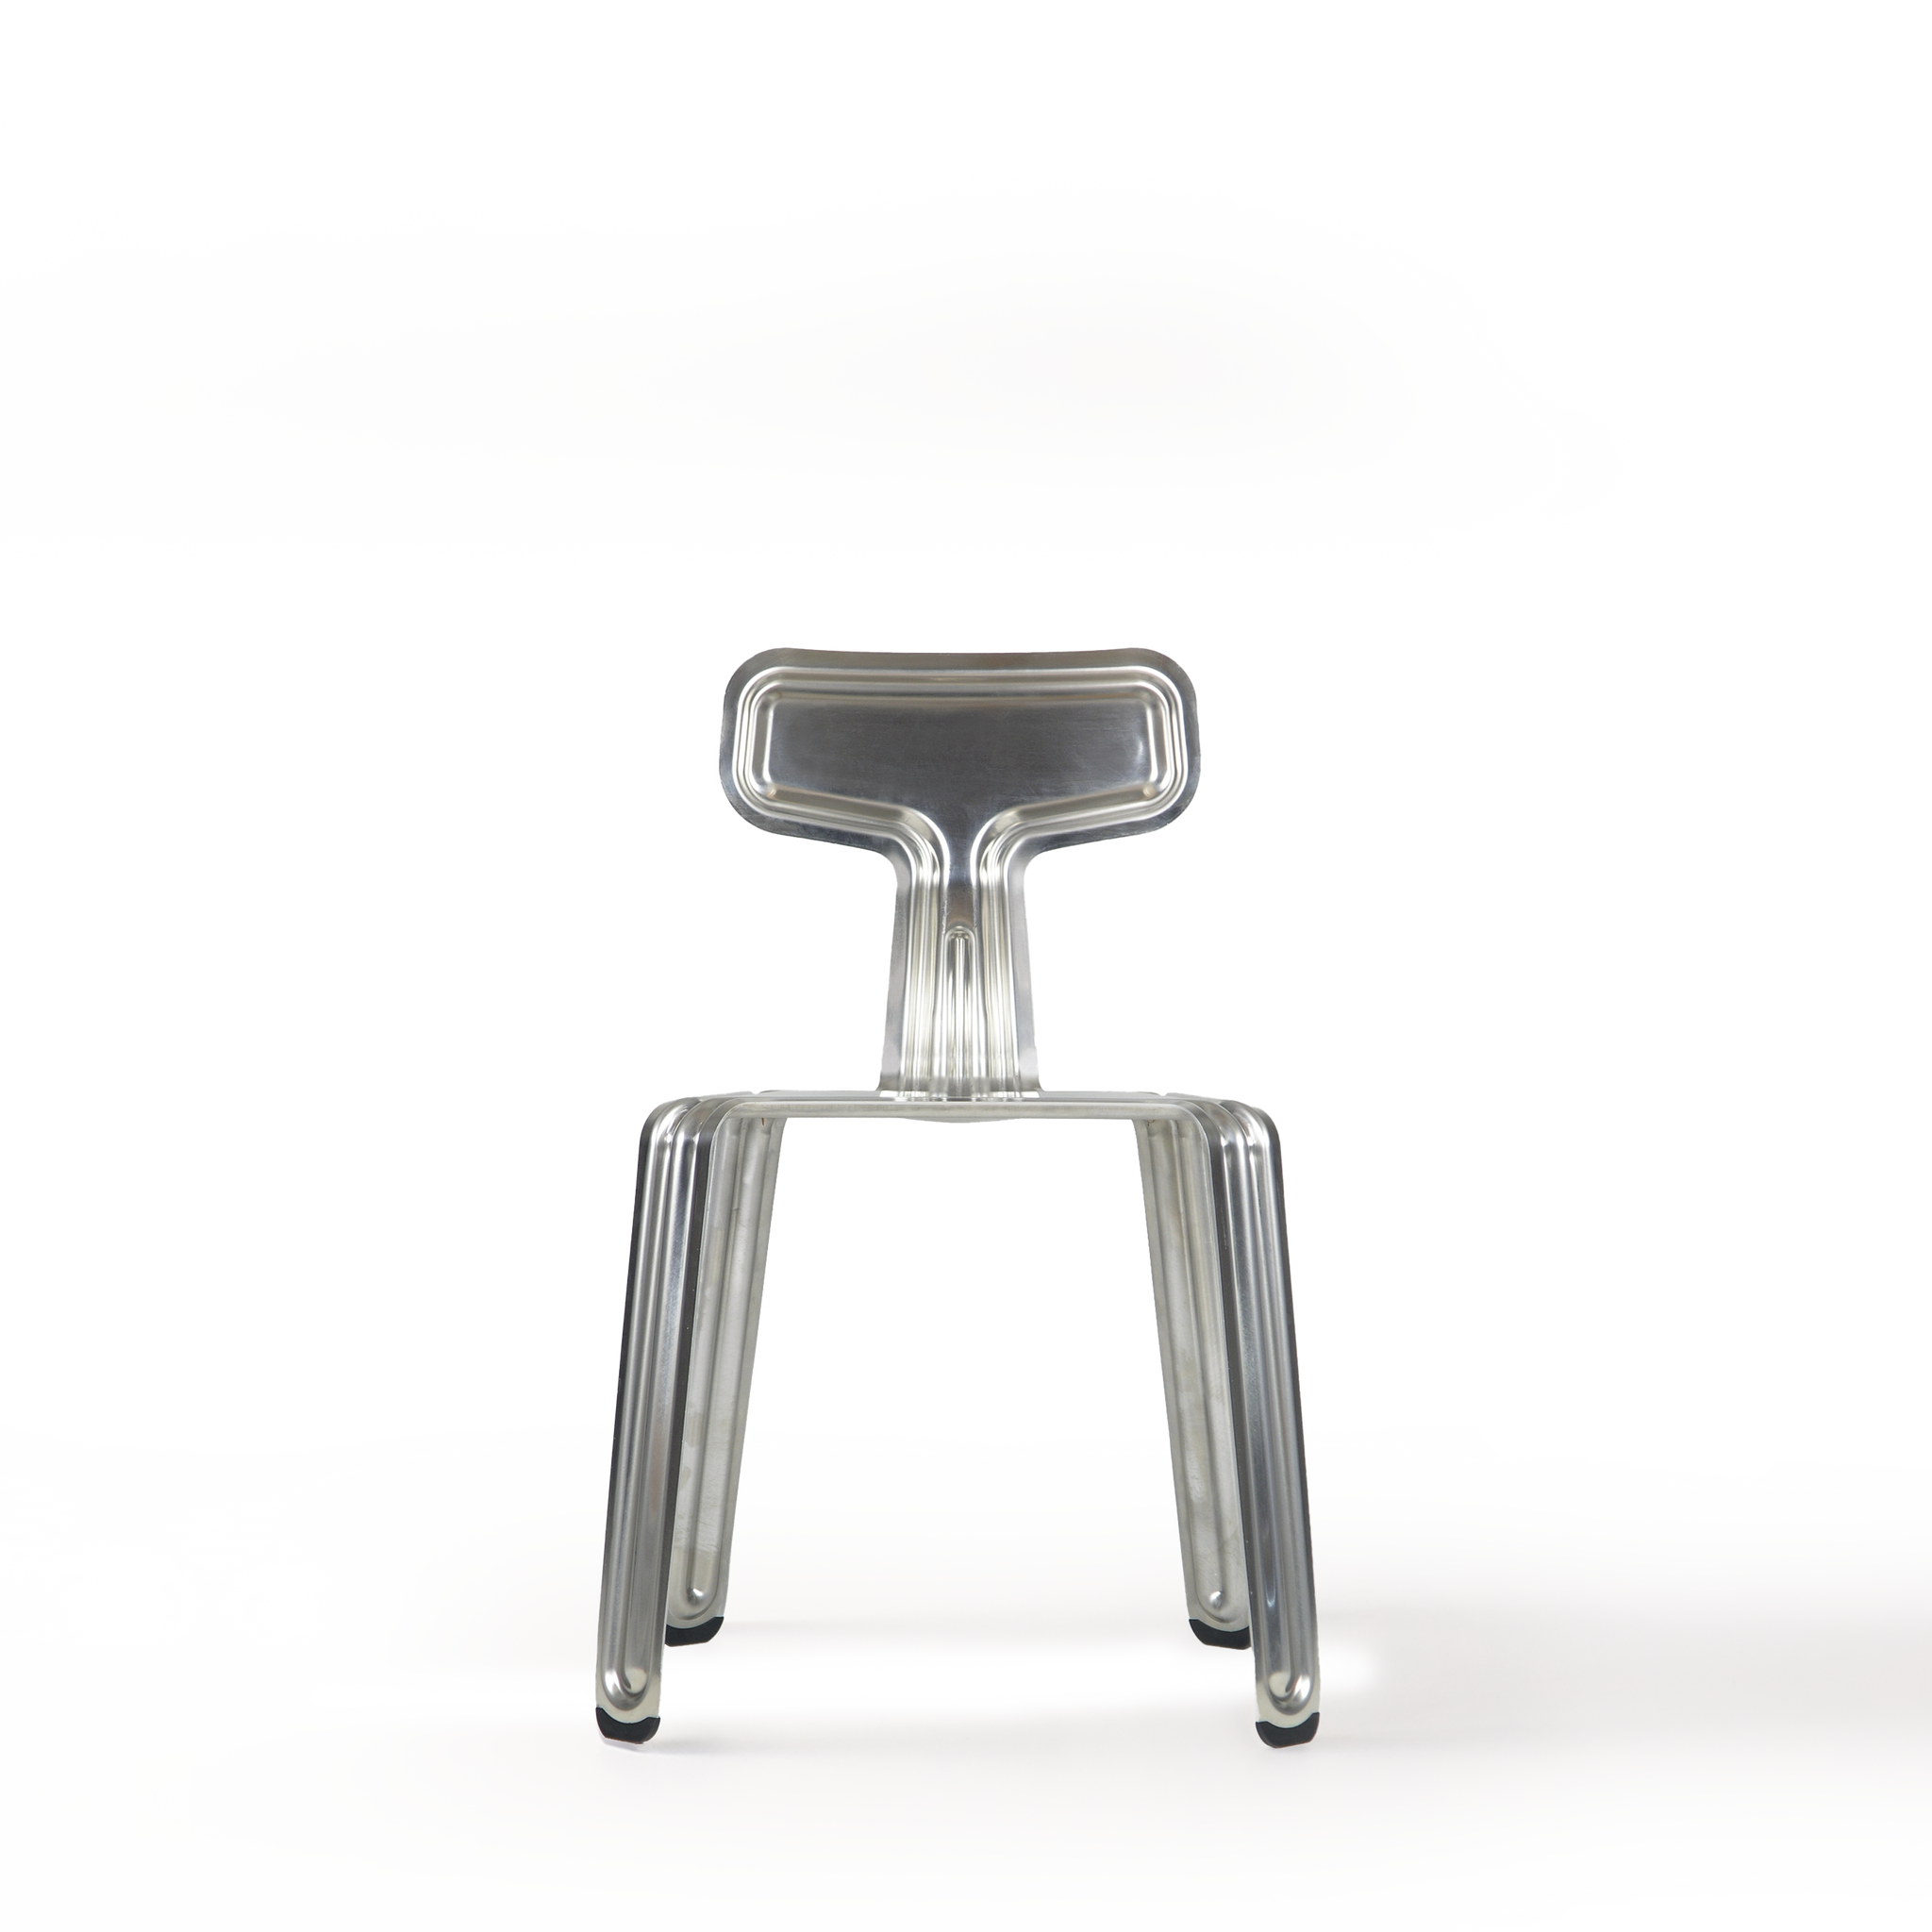 Moormann Pressed Chair Aluminium roh (Sonderverkauf mit Schönheitsfehlern*)